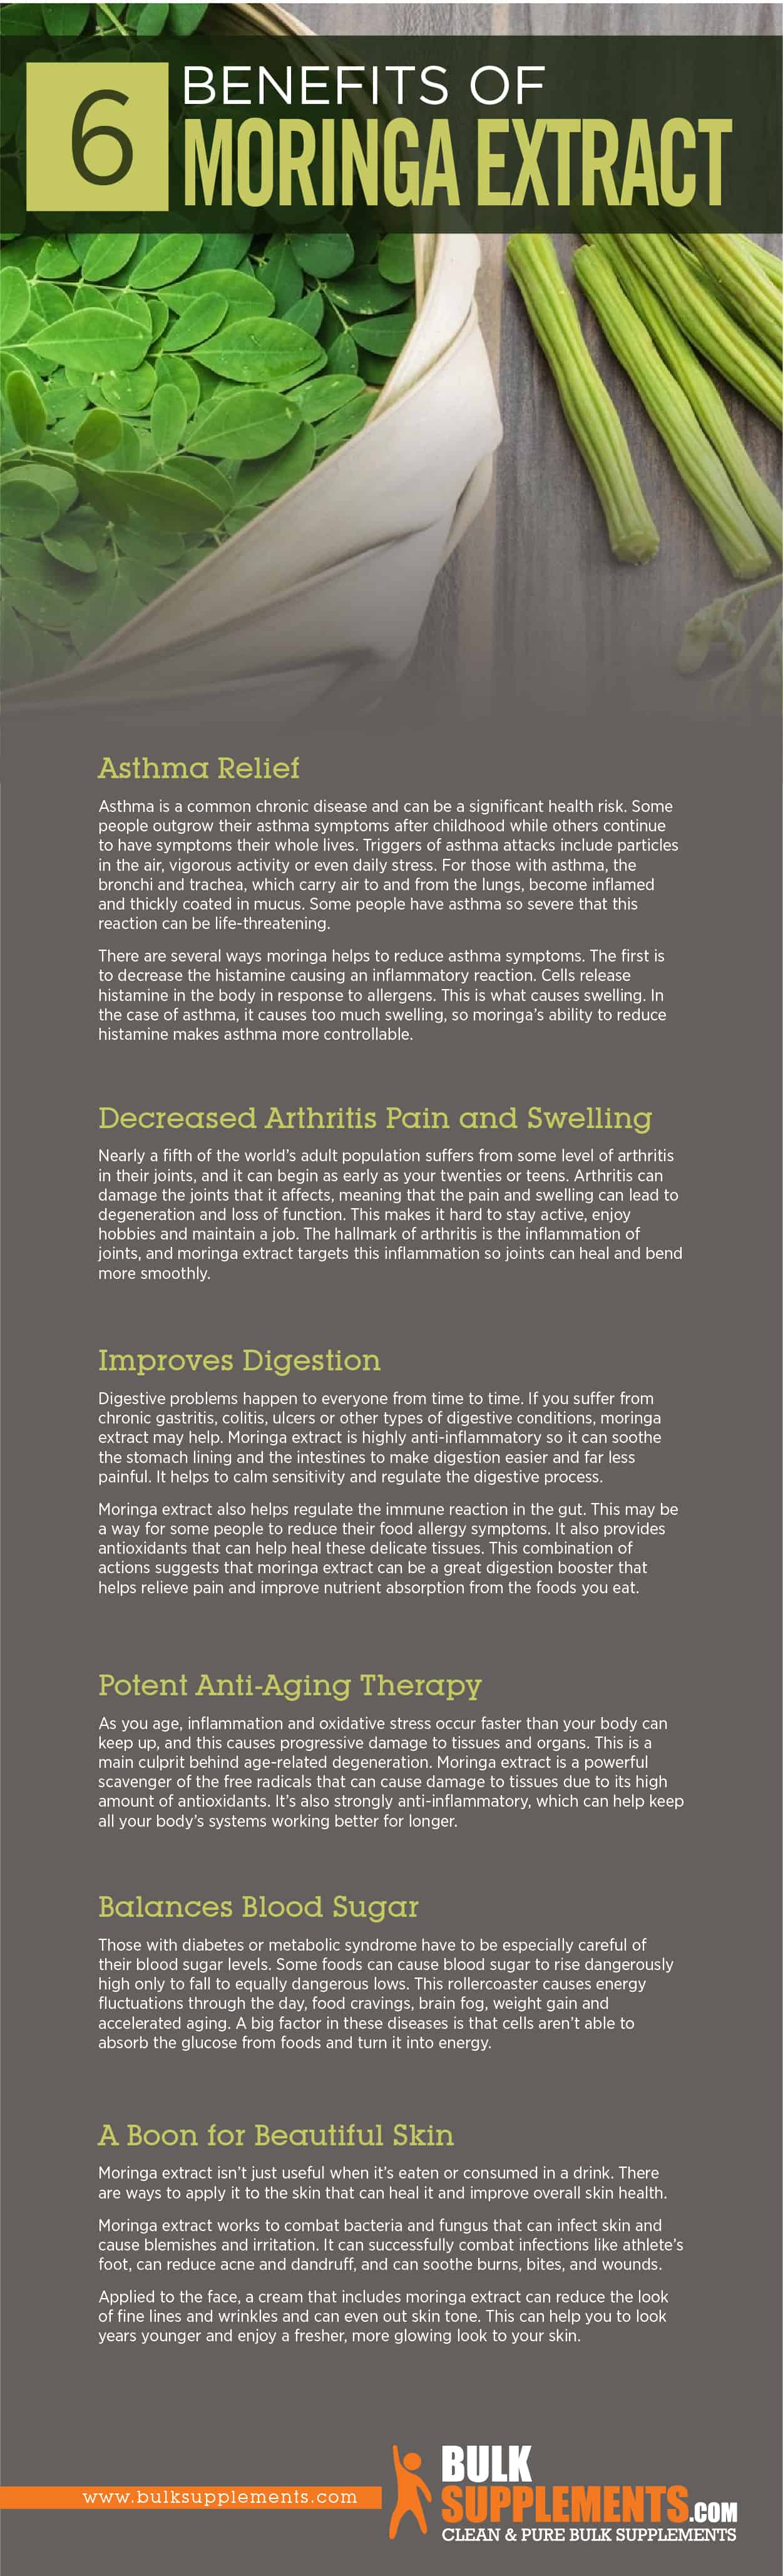 Moringa Extract Benefits